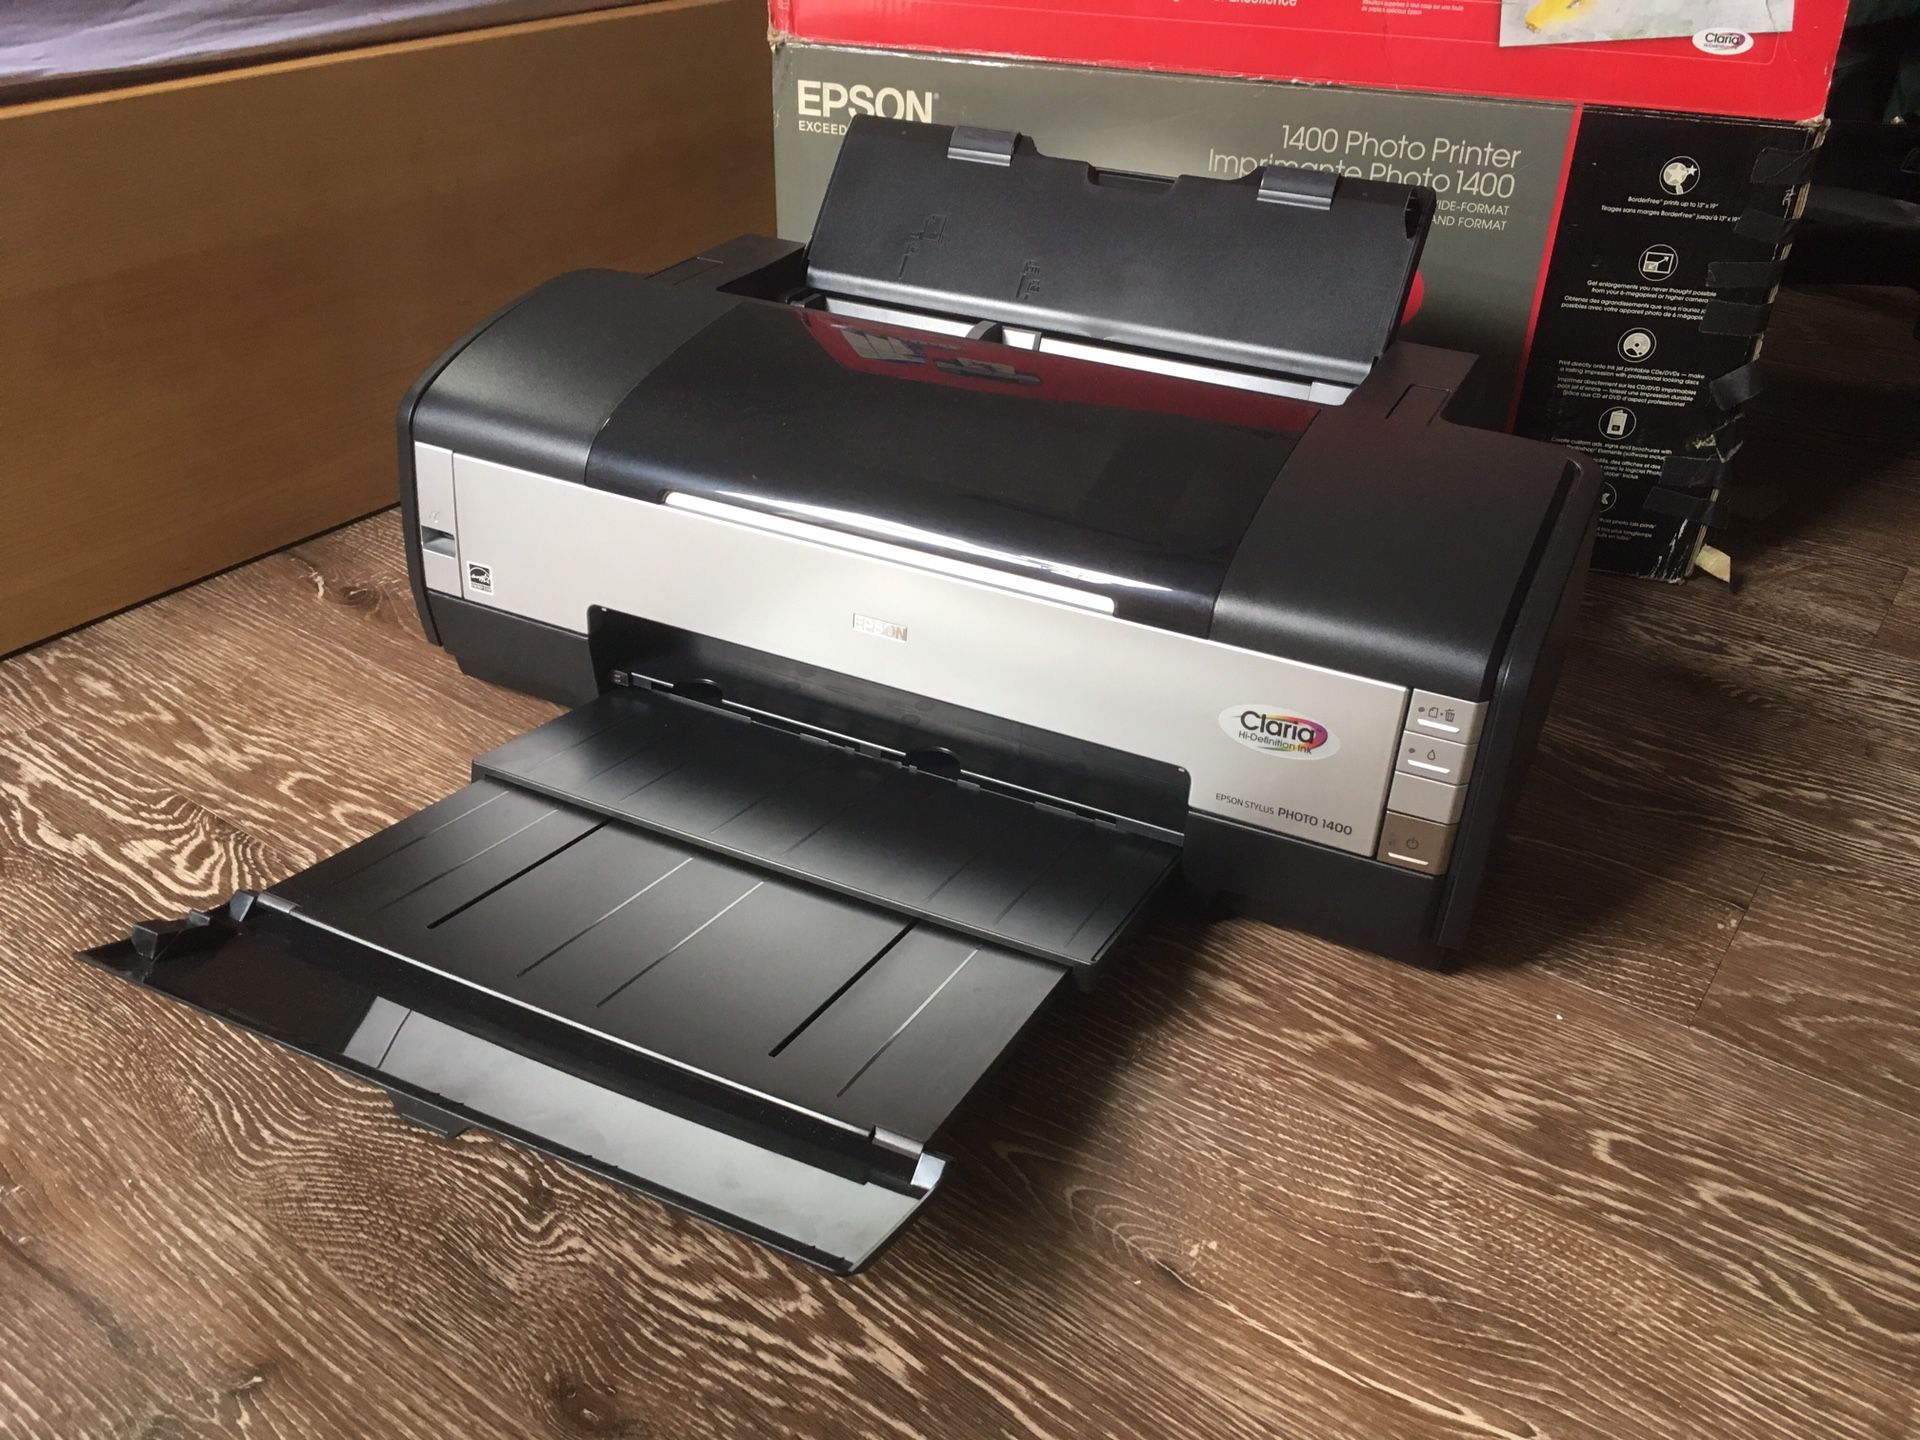 Epson 1400 Photo Printer